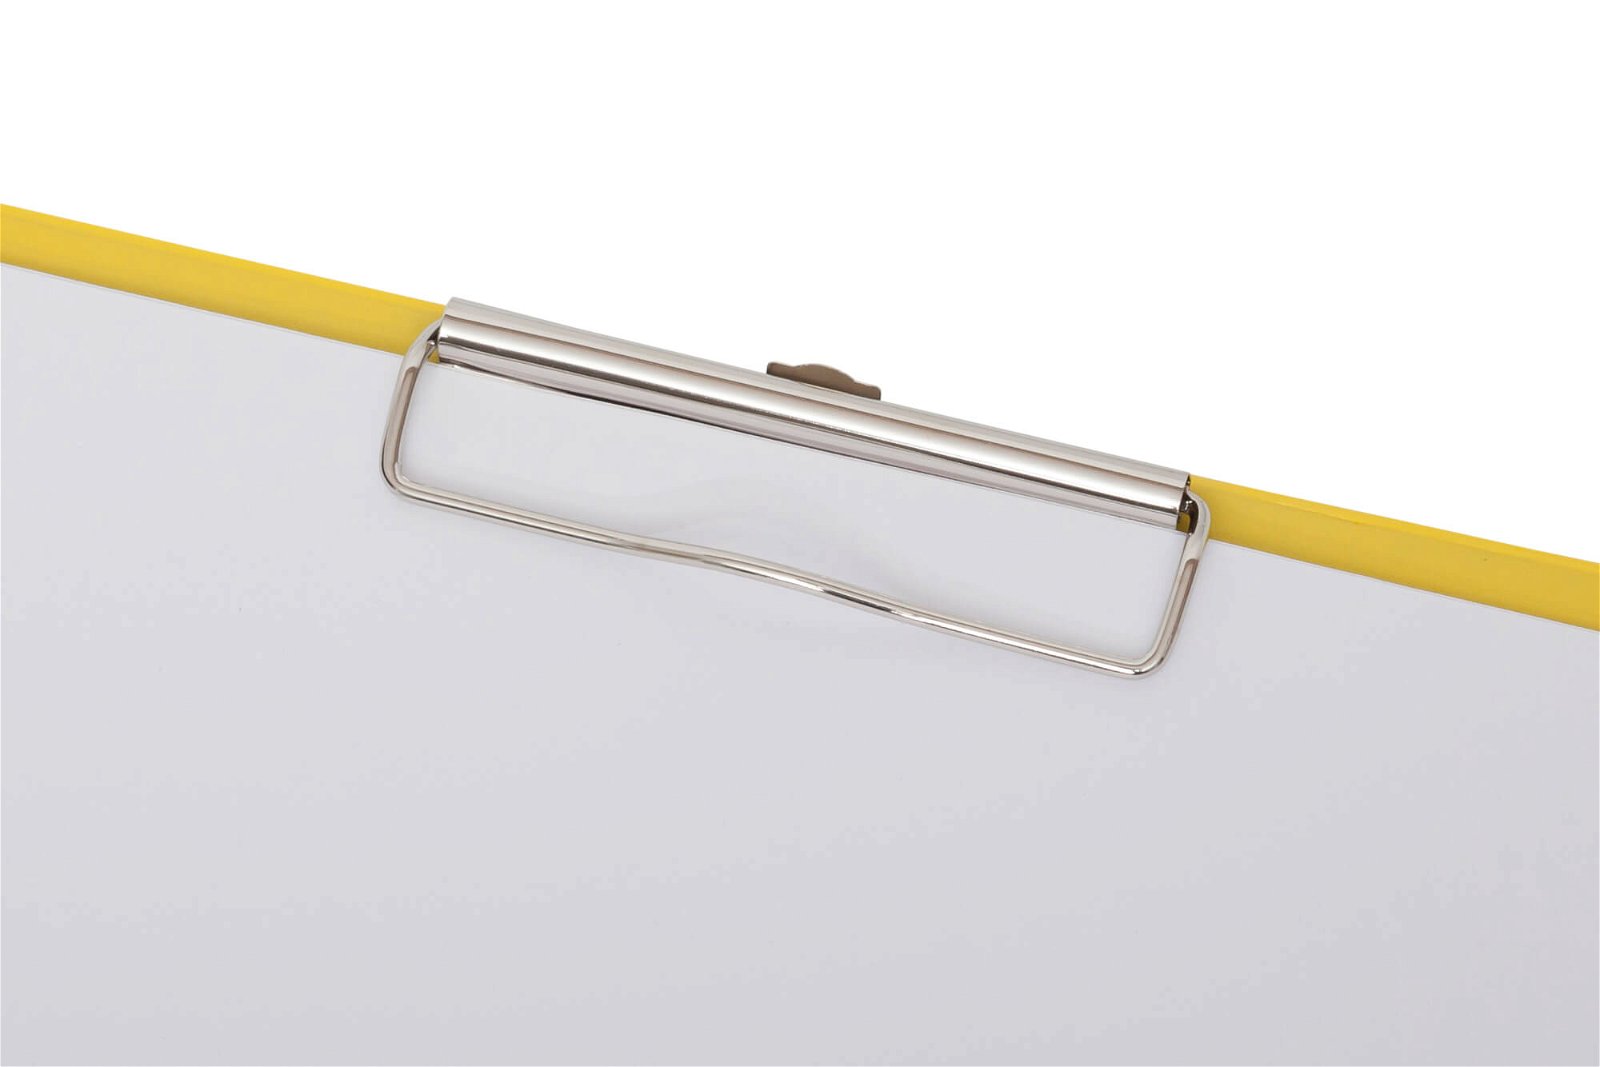 A4 Schreibmappe mit Folien- überzug, gelb